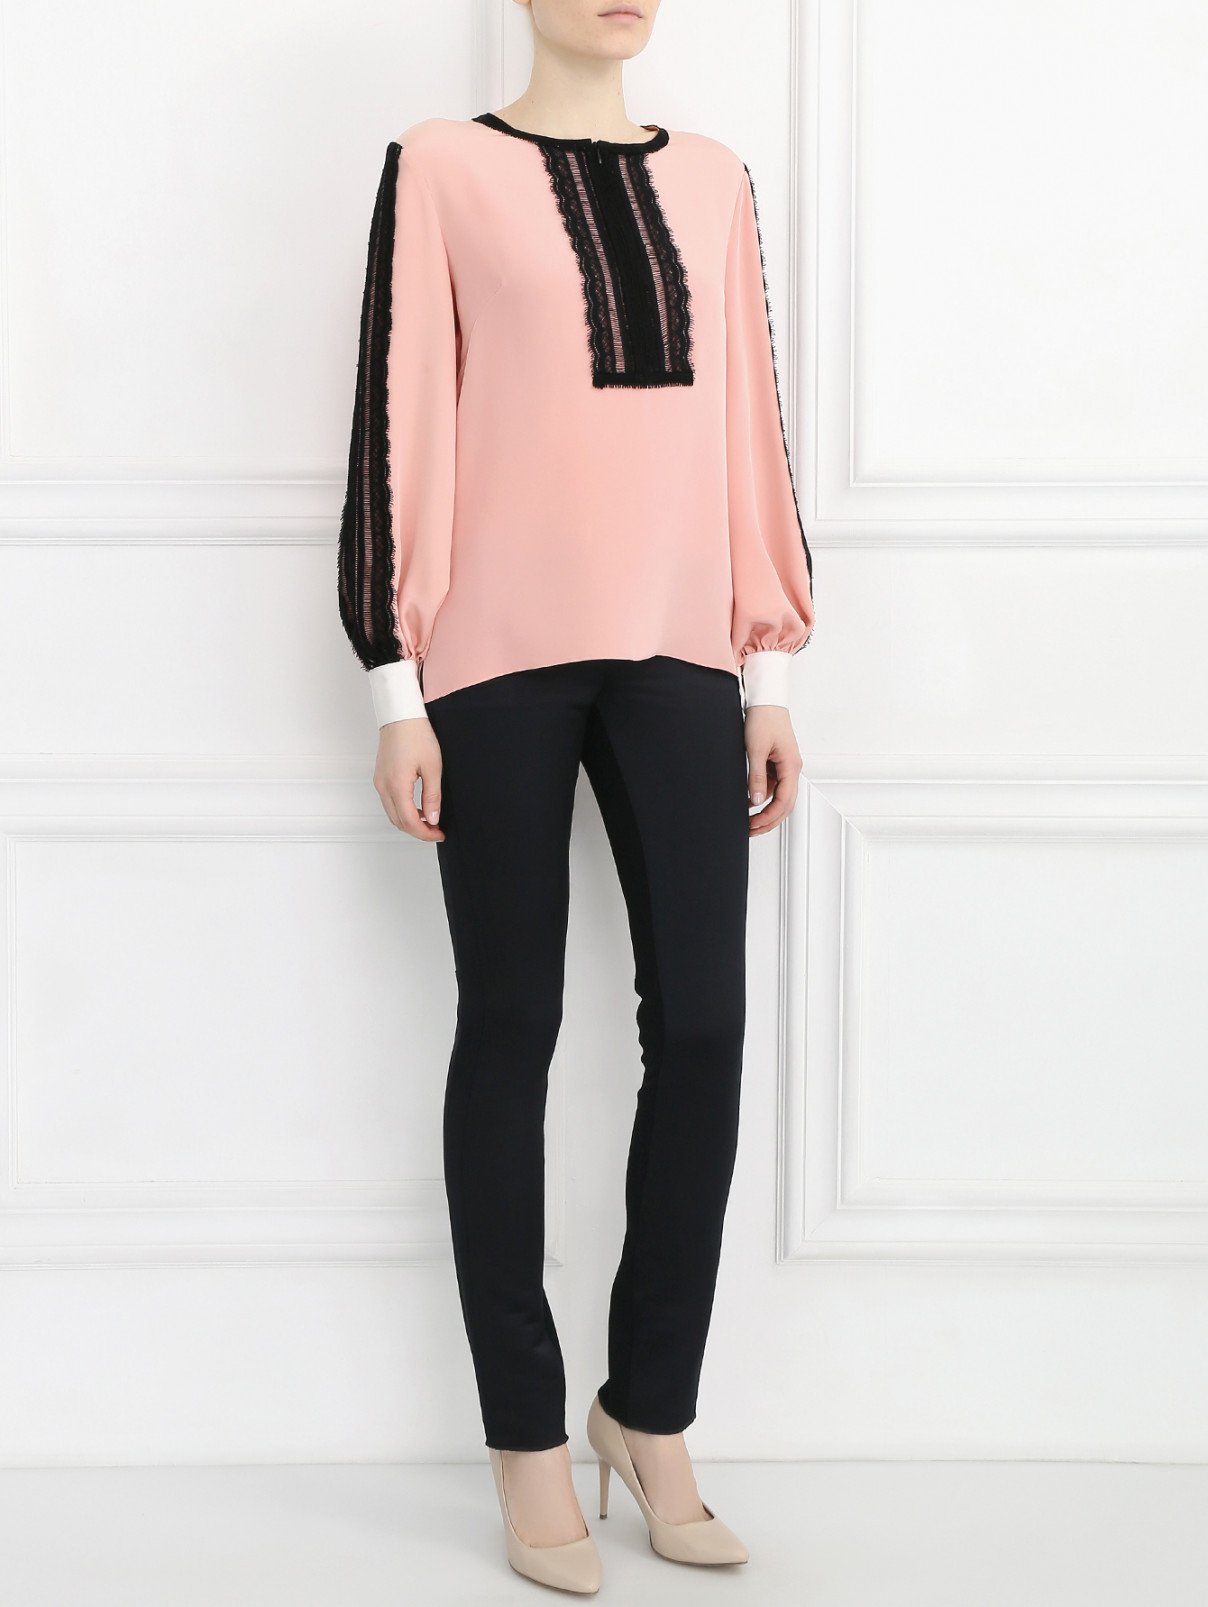 Блуза из шелка с кружевной вставкой Andrew GN  –  Модель Общий вид  – Цвет:  Розовый